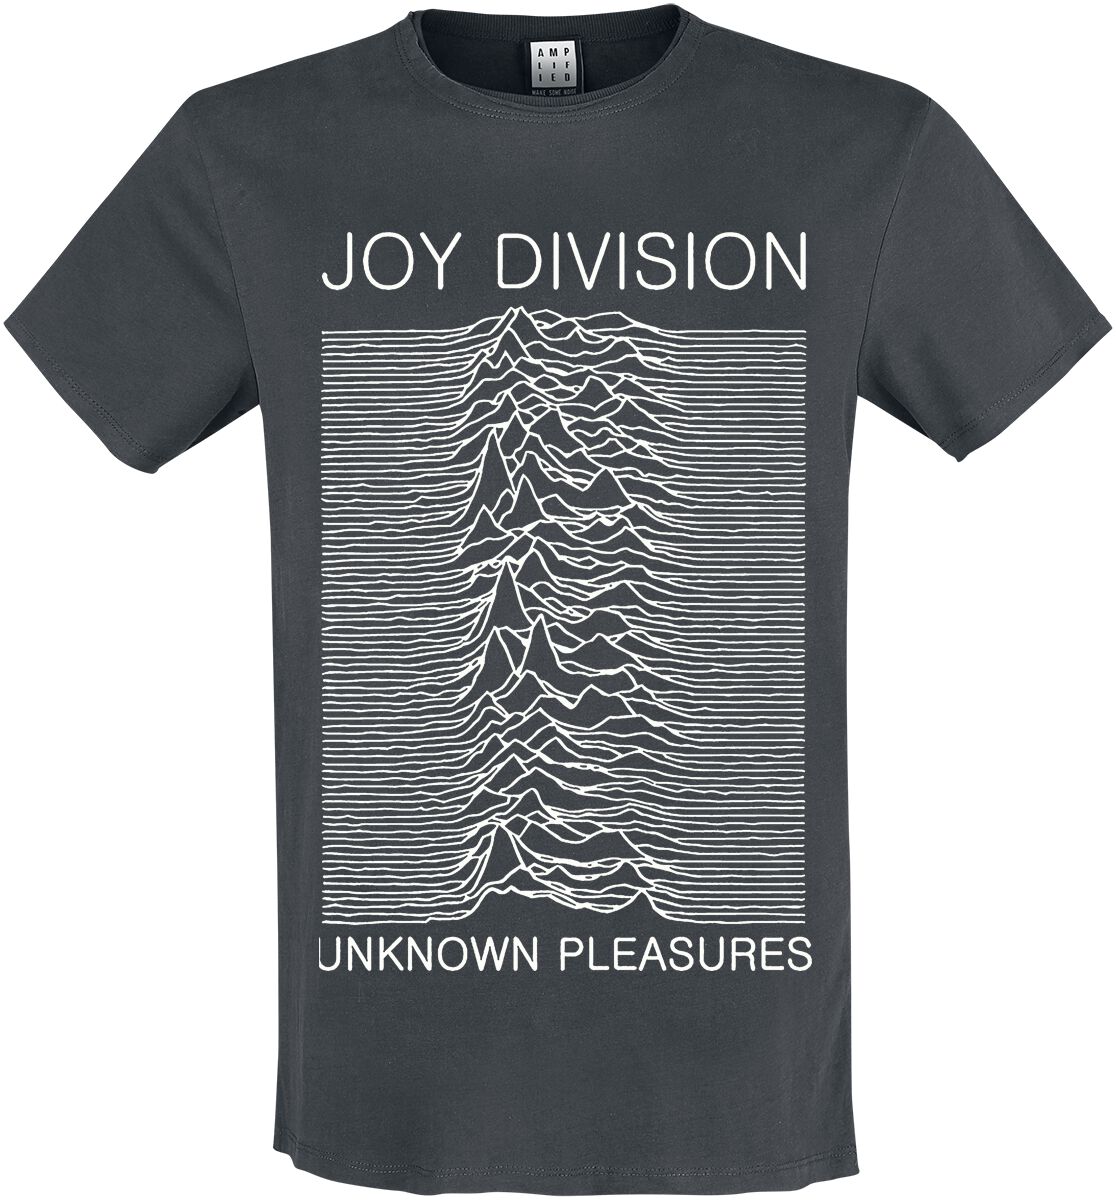 Joy Division T-Shirt - Amplified Collection - Unknown Pleasures - S bis 3XL - für Männer - Größe 3XL - charcoal  - Lizenziertes Merchandise!